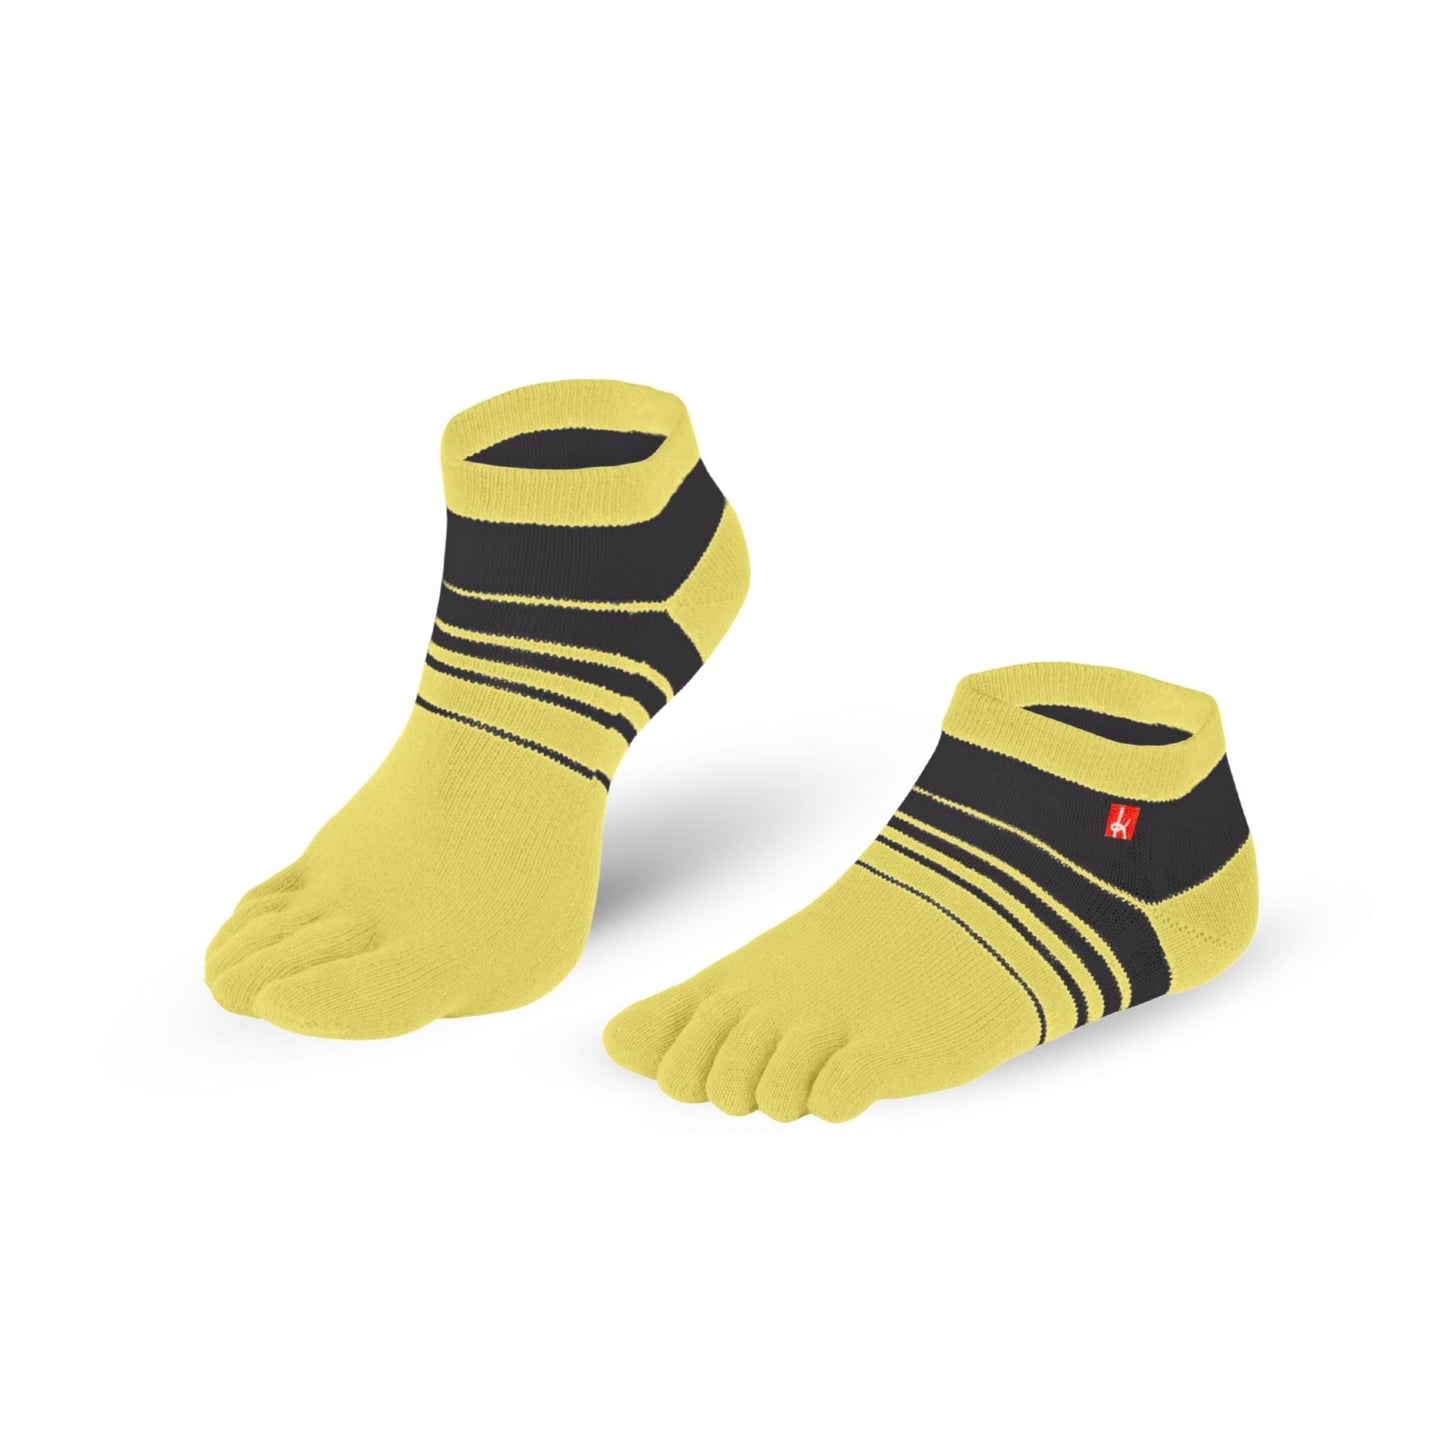 Knitido Track & Trail Spins barfods ankle tåsokker til kvinder og mænd i farven yellow/black, par